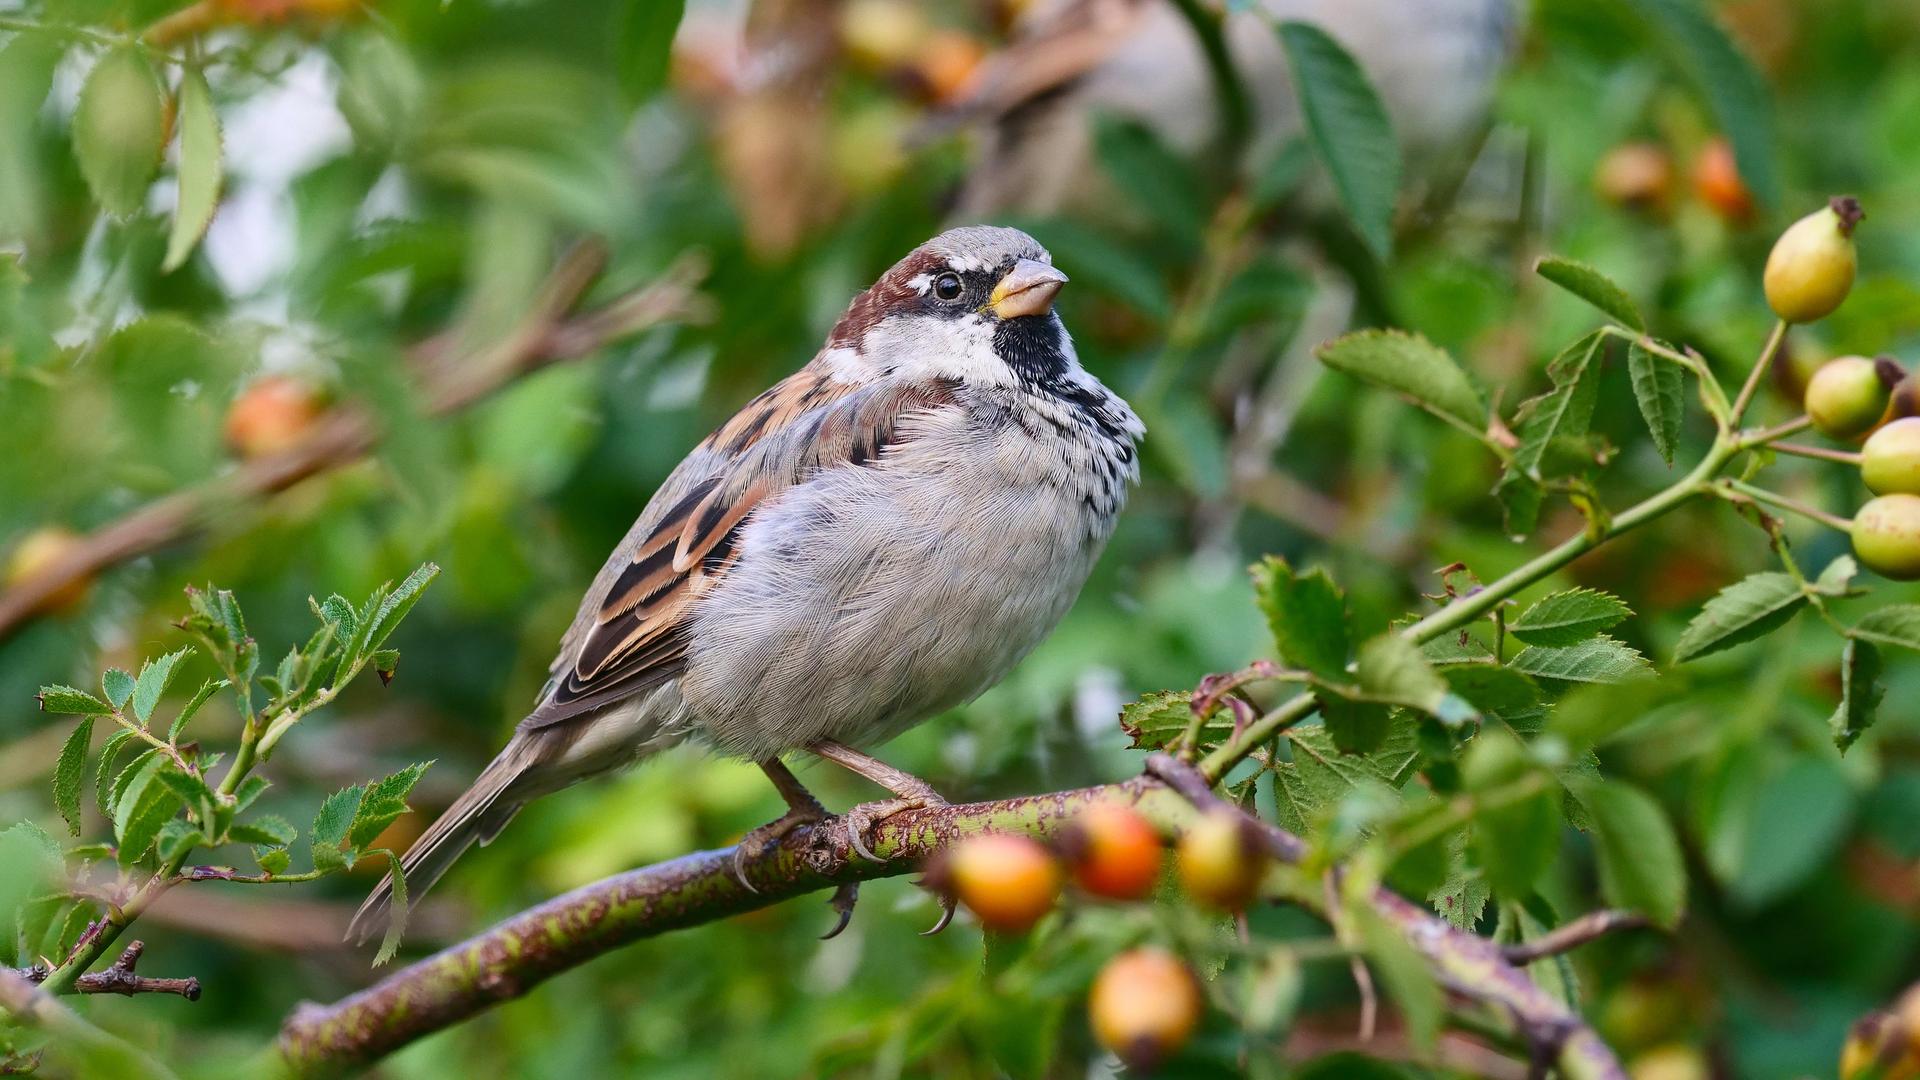  Ein kleiner Vogel mit grau-braunem Gefieder sitzt in einem Hagebuttenbusch. Es ist ein Haussperling. 